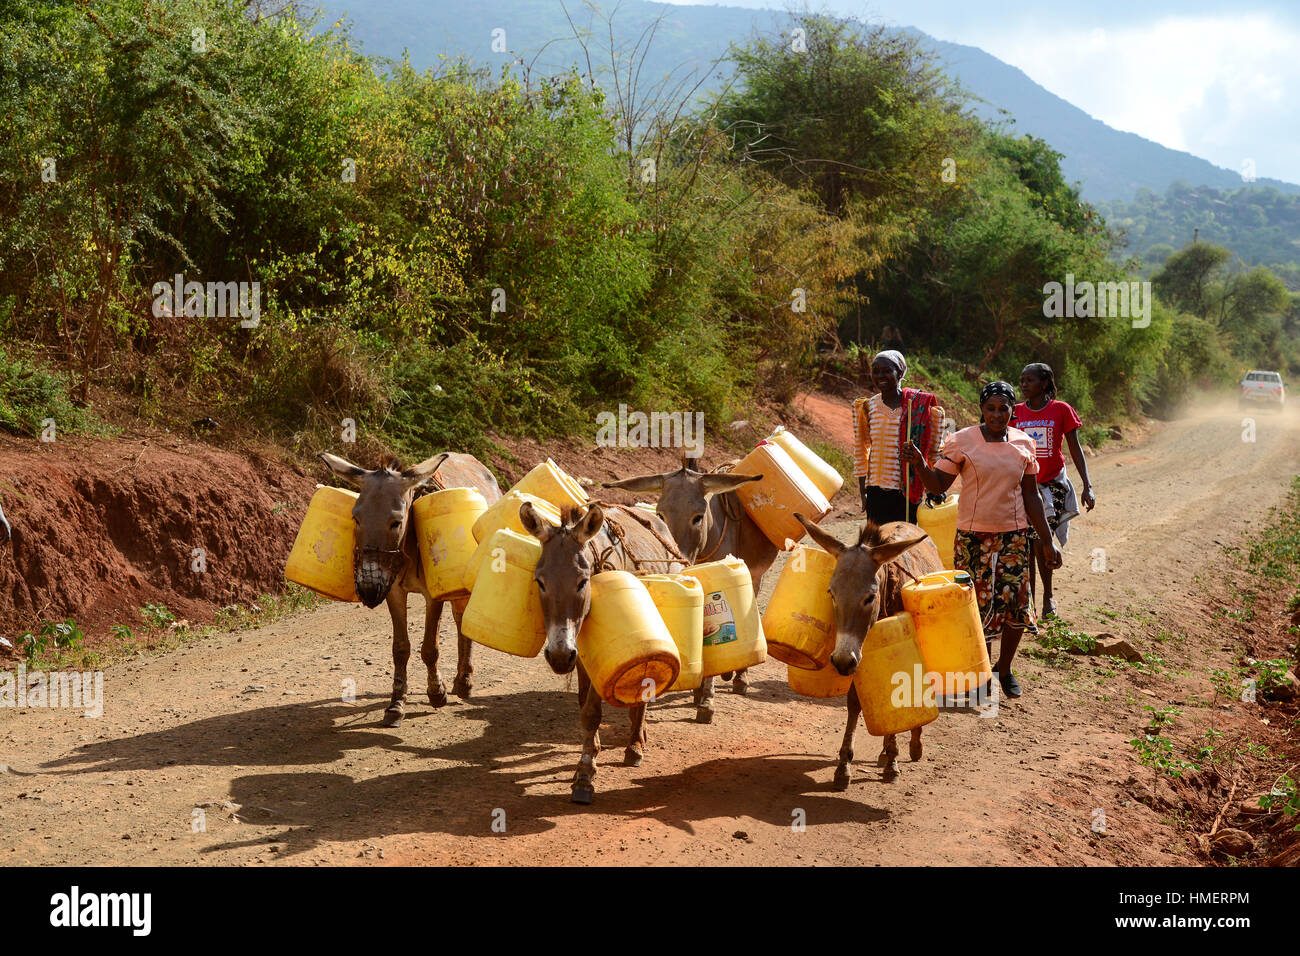 KENIA, Mount Kenia Osten, extreme Dürre wegen Mangel an Regen verursachte massive Wasserprobleme, Dorfbewohner Transport Wasser mit Eseln über große Entfernungen Stockfoto